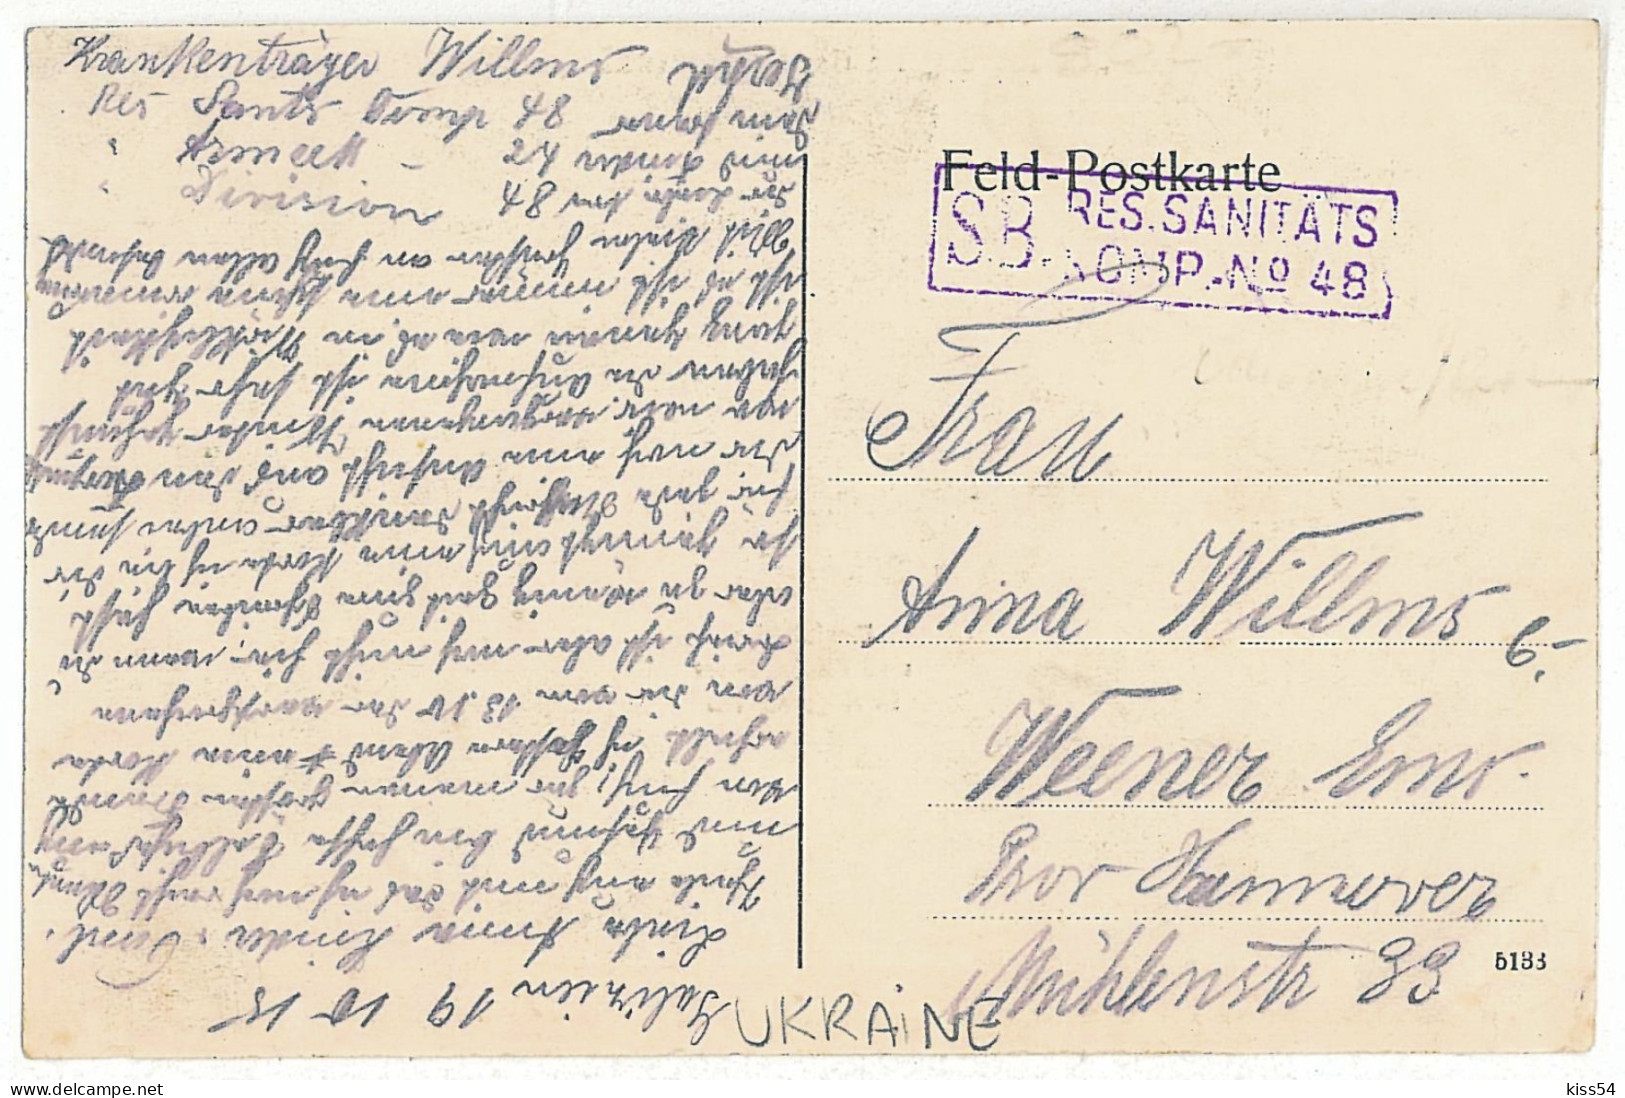 UK 27 - 5187 KARPATHEN, Ukraine, Nagy Ag Tal - Old Postcard CENSOR - Used - 1916 - Ukraine